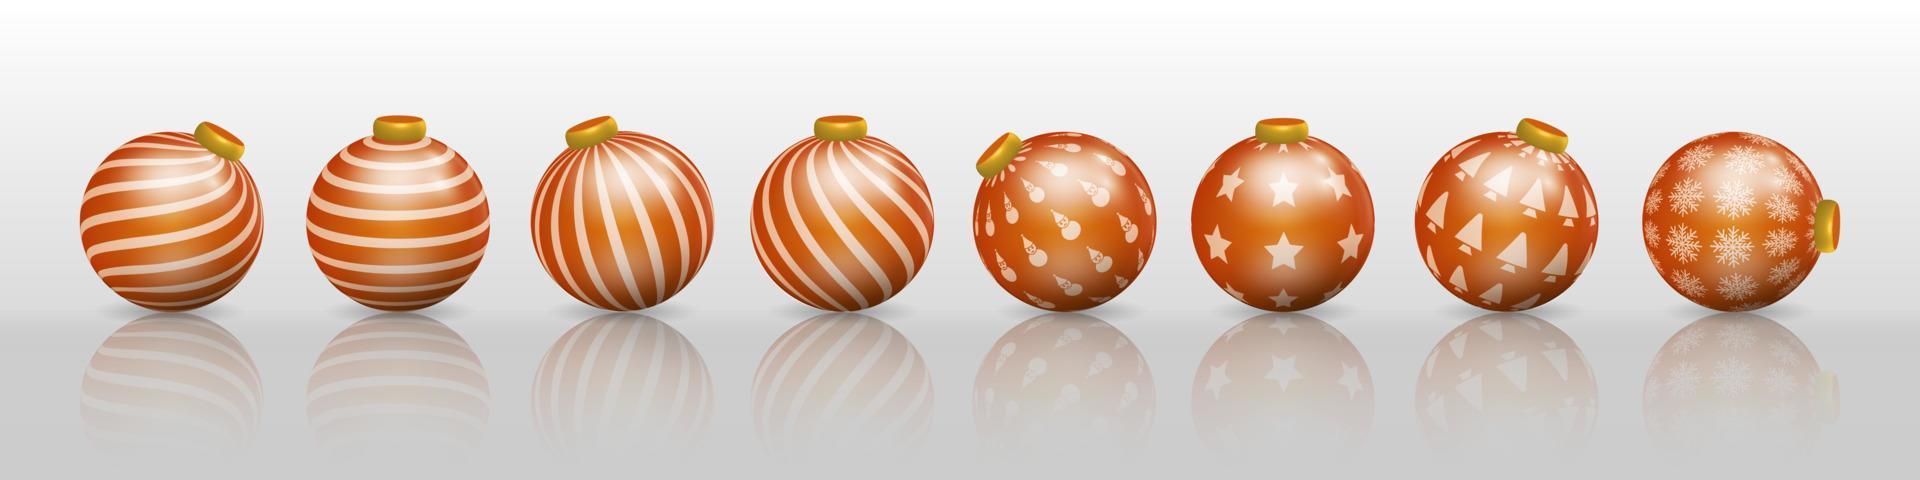 ensemble de décorations de boule de noël orange, ornements avec divers motifs vecteur